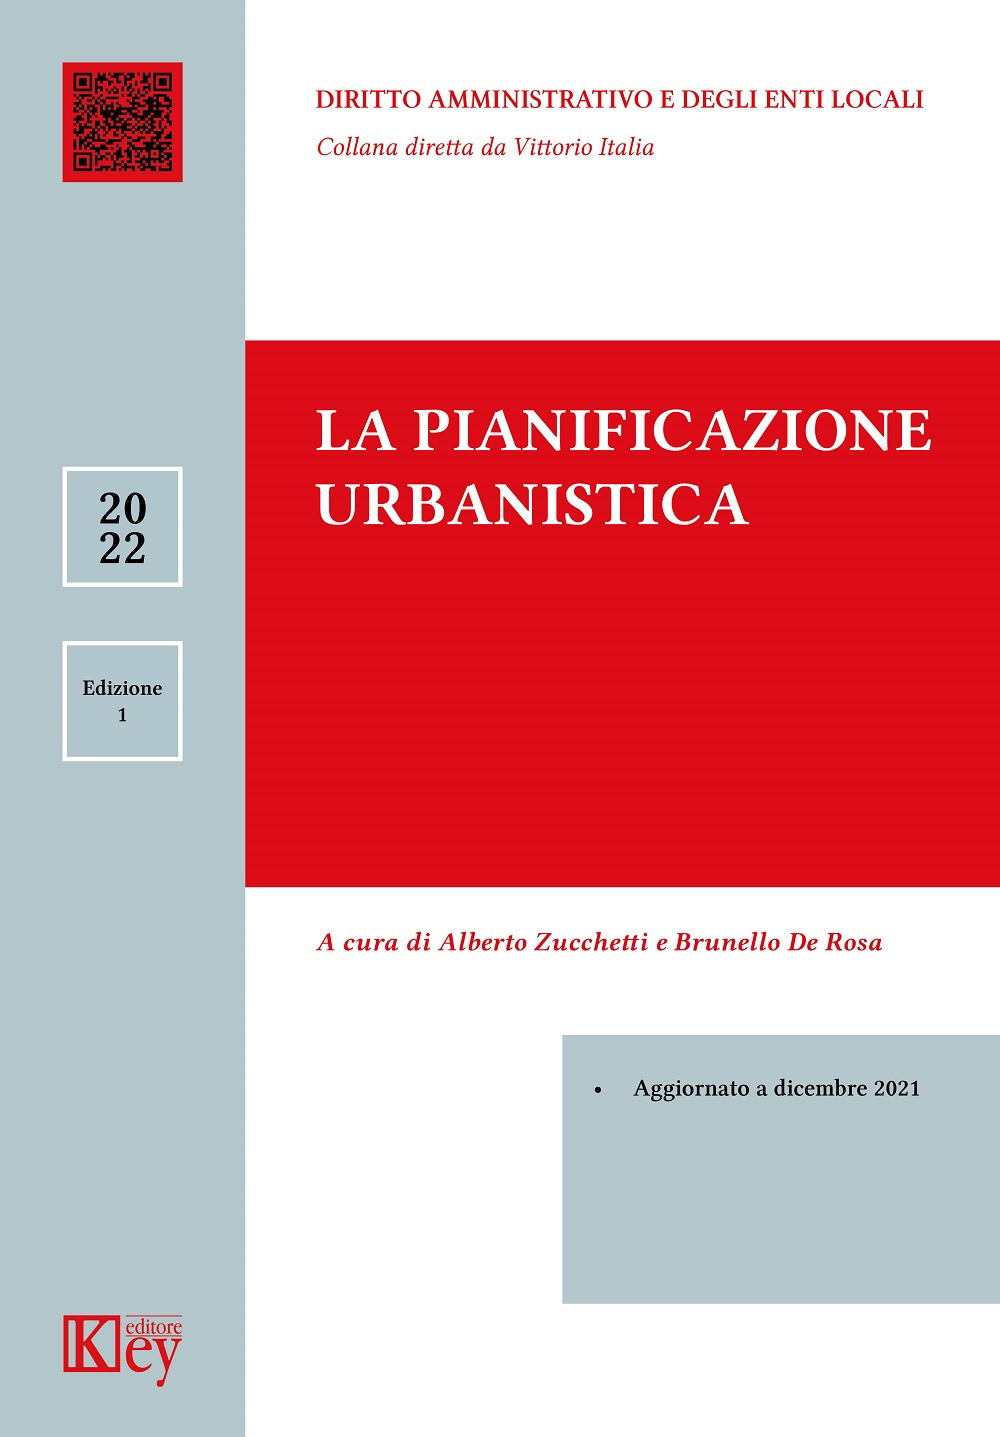 Libri Alberto Zucchetti / De Rosa Brunello - La Pianificazione Urbanistica NUOVO SIGILLATO, EDIZIONE DEL 17/02/2022 SUBITO DISPONIBILE